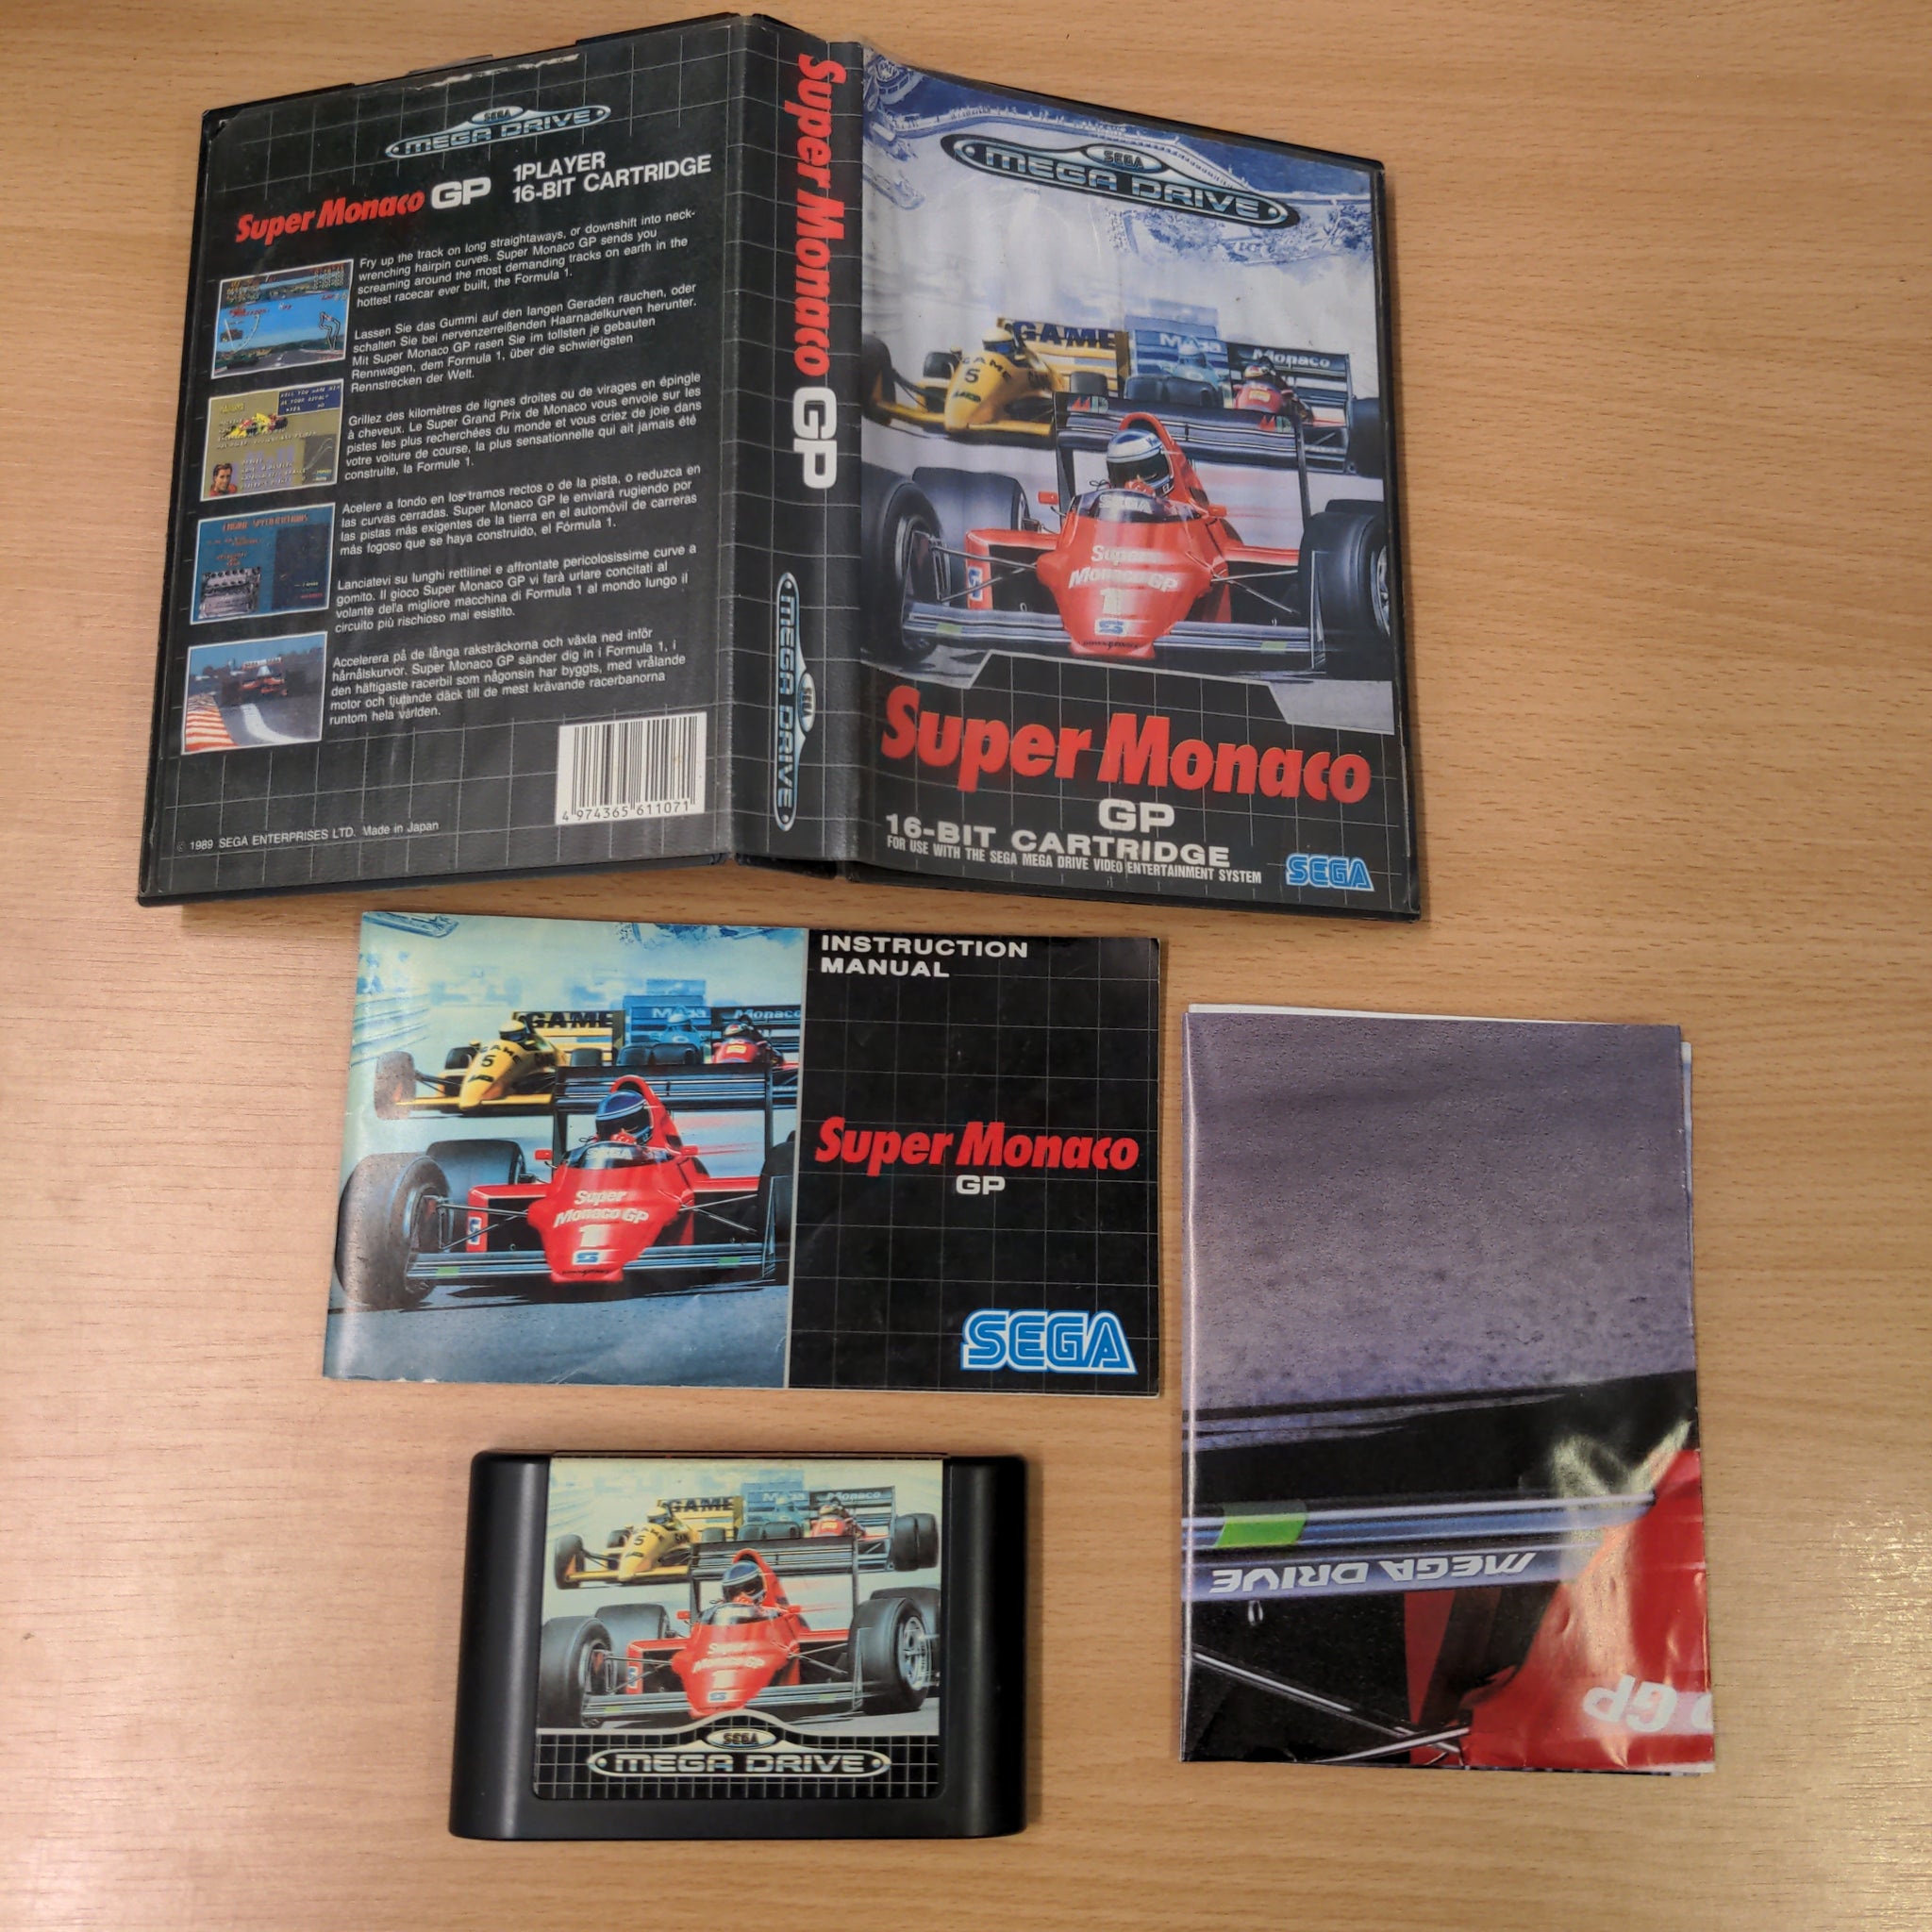 Super Monaco GP Sega Mega Drive game complete with Poster